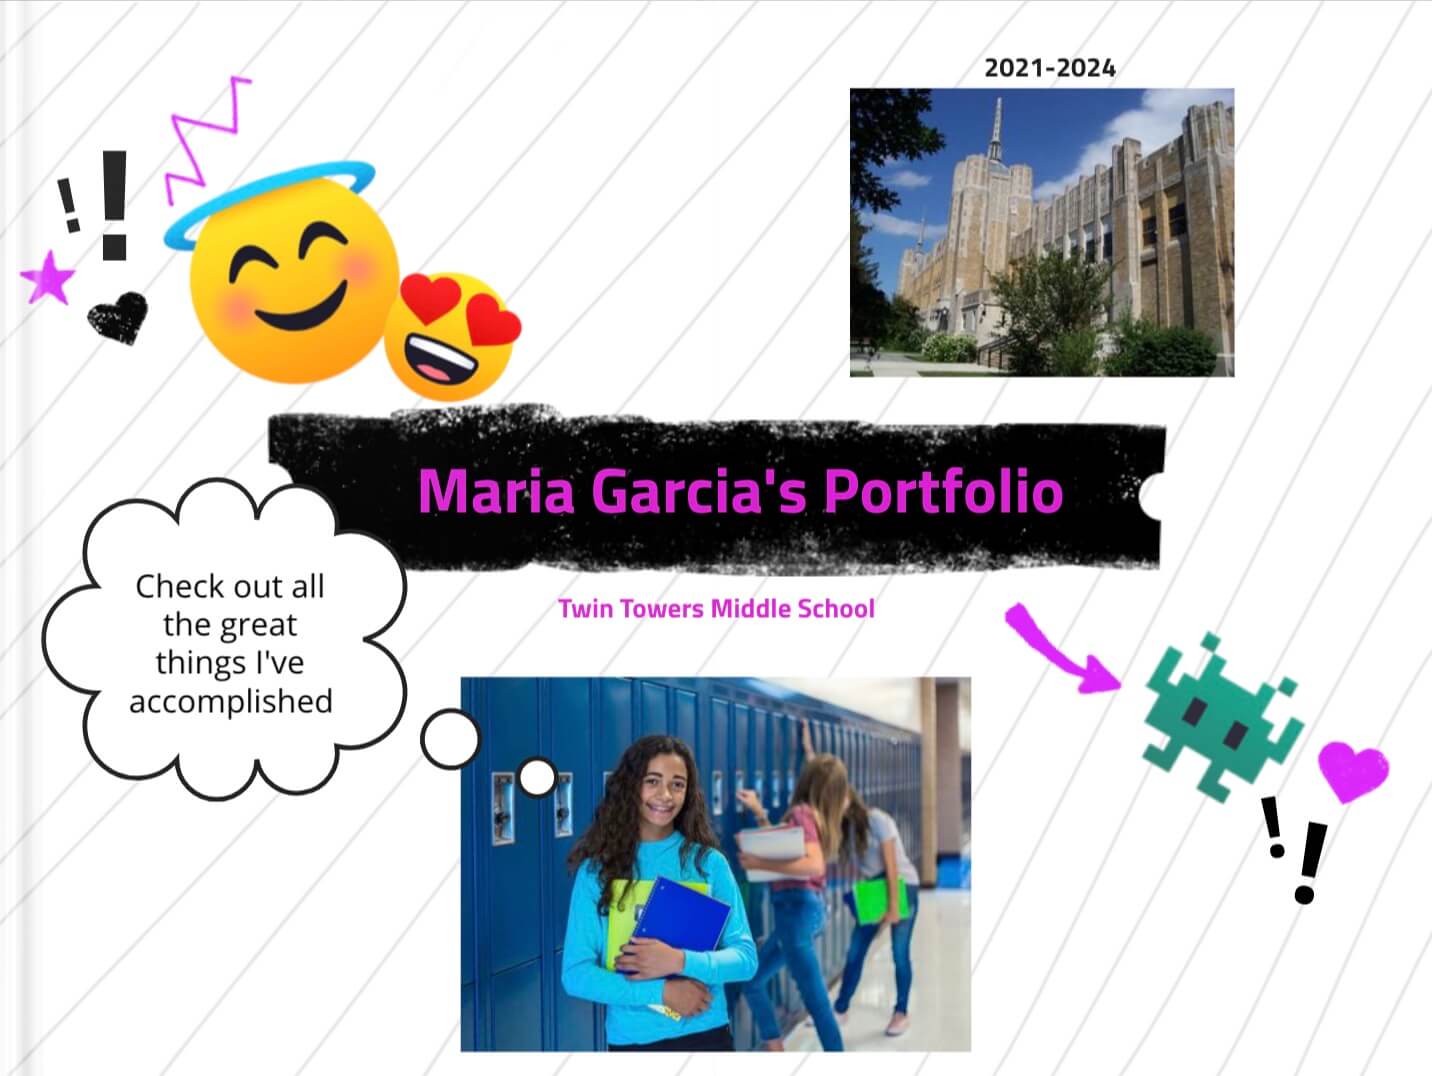 Maria Garcia's portfolio